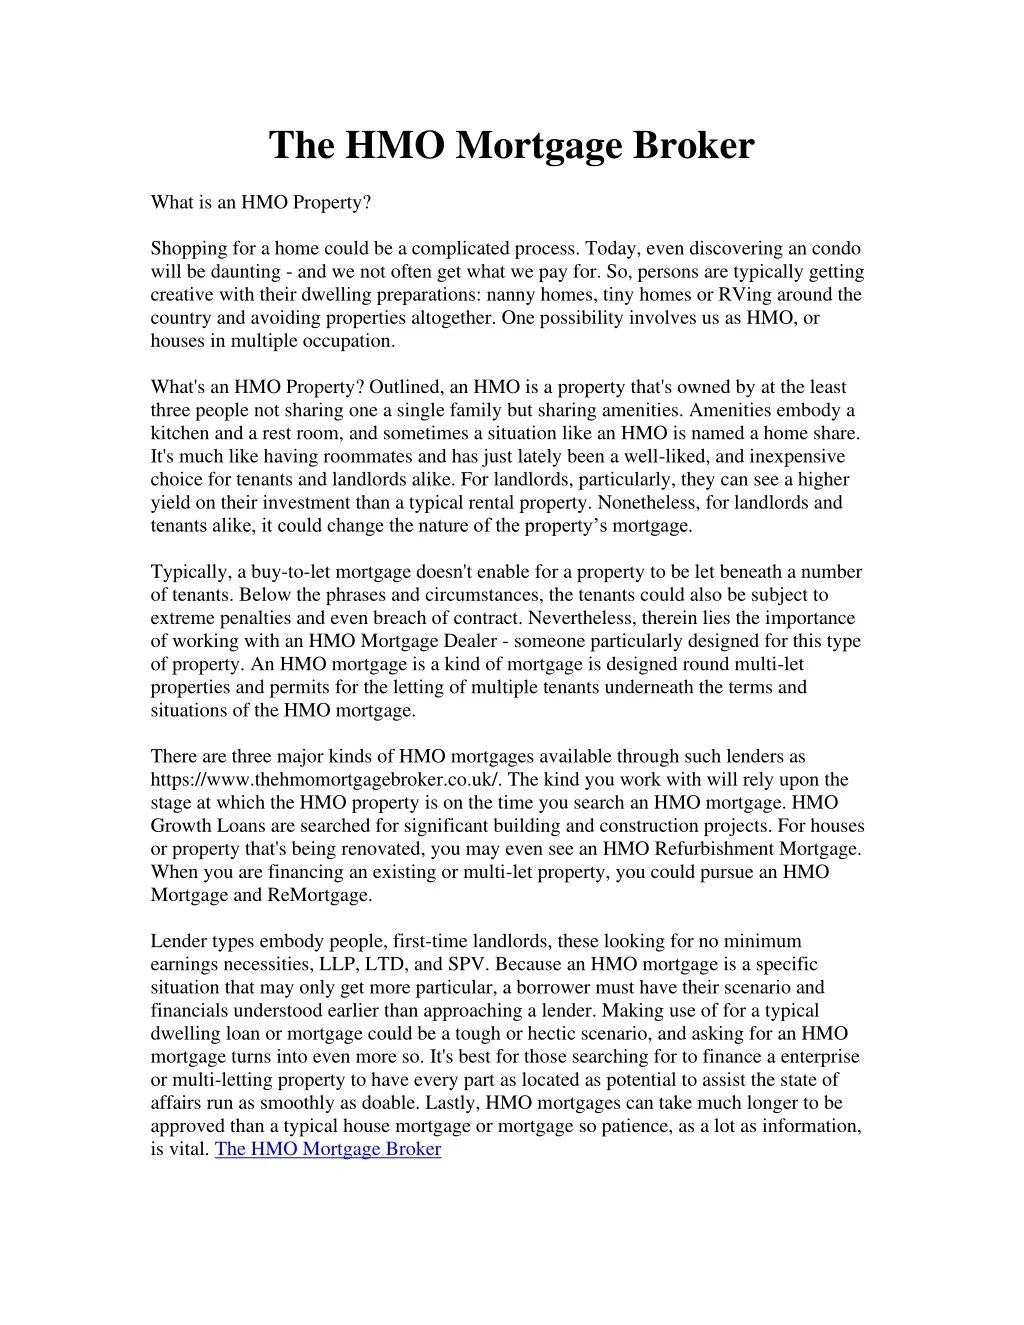 the hmo mortgage broker